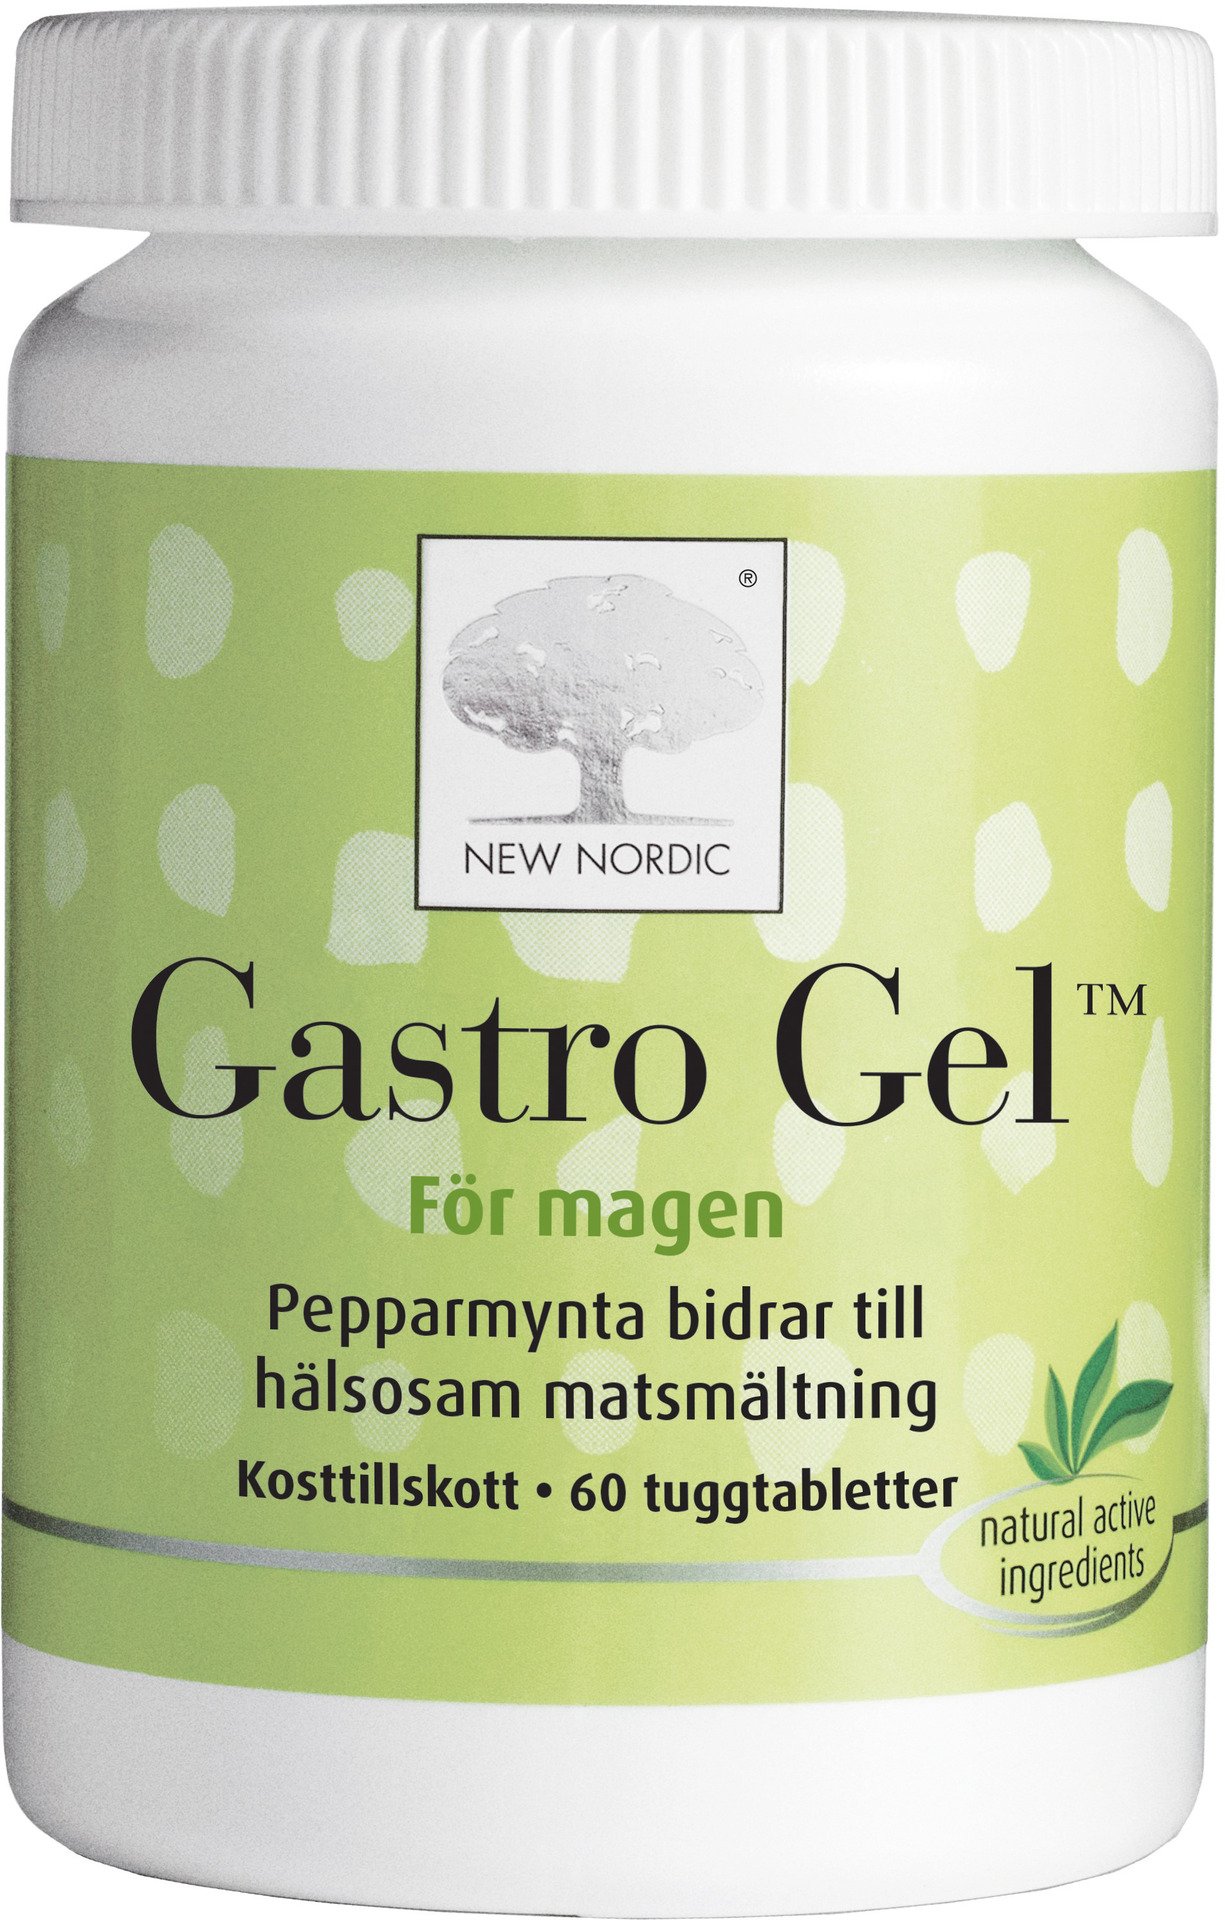 New Nordic Gastro Gel 60 tuggtabletter